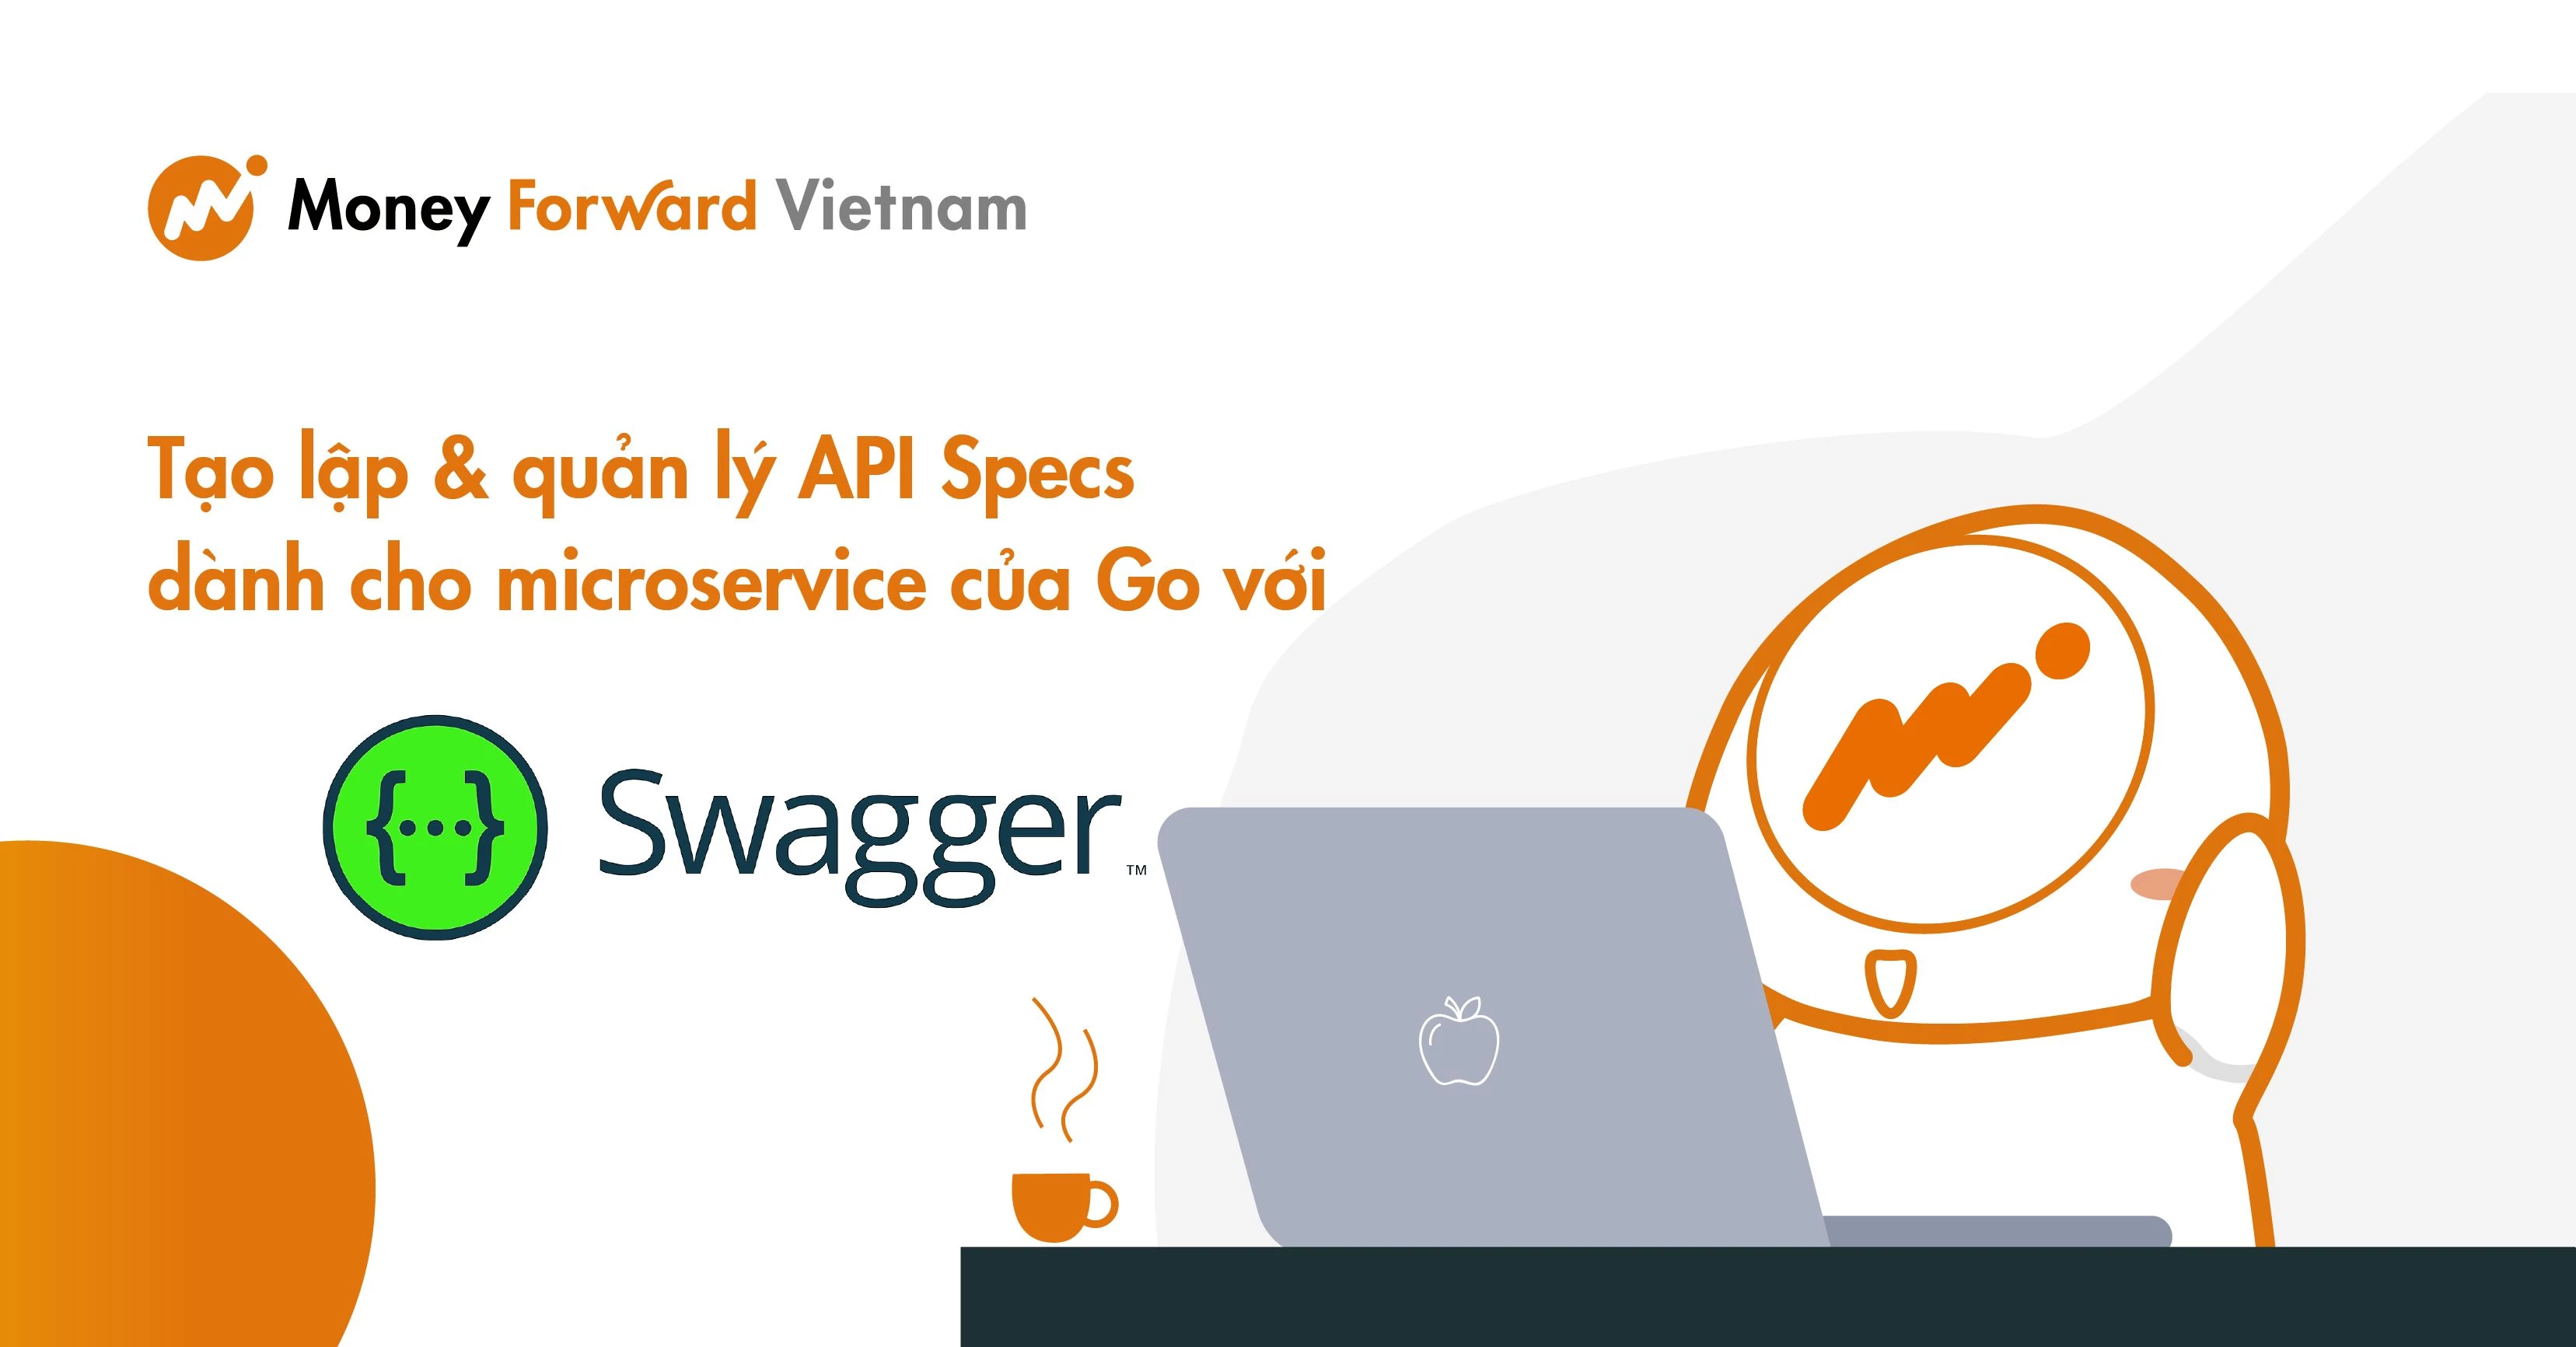 Tạo lập & quản lý API Specs dành cho microservice của Go với Swagger